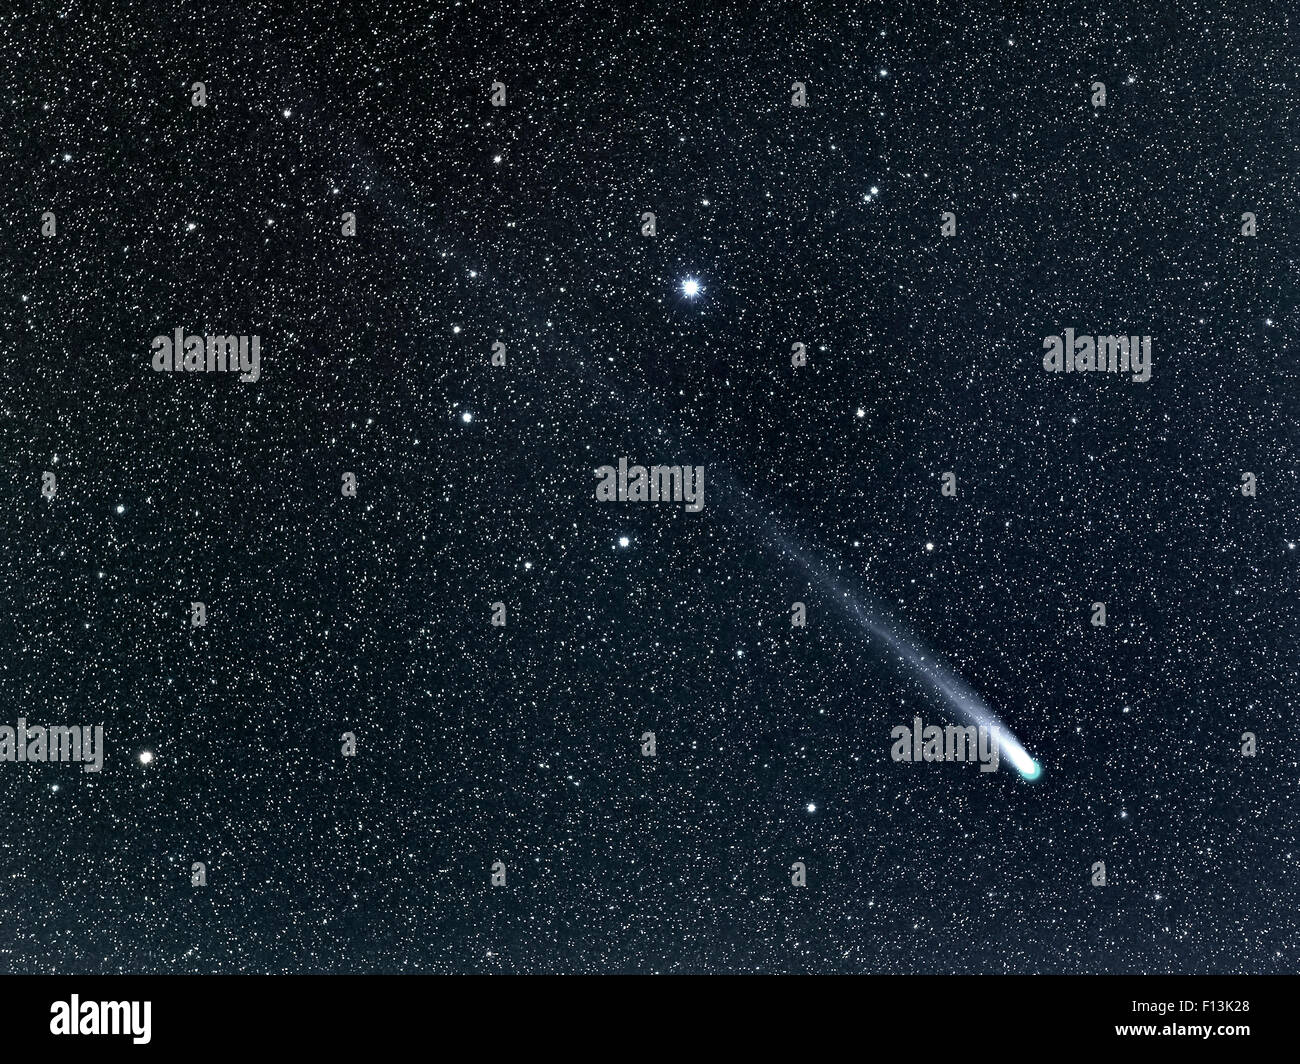 Komet C/2013 R1 (Lovejoy) Streaming-vorbei an der Sterne Sarin (Hüfte 84379) im Sternbild Herkules, wie es Perihel (der nächstgelegene Punkt zur Sonne) verlässt und wieder auf seiner Umlaufbahn in den Weltraum. In den frühen Morgenstunden am 28. Dezember 2013 her genommen Stockfoto